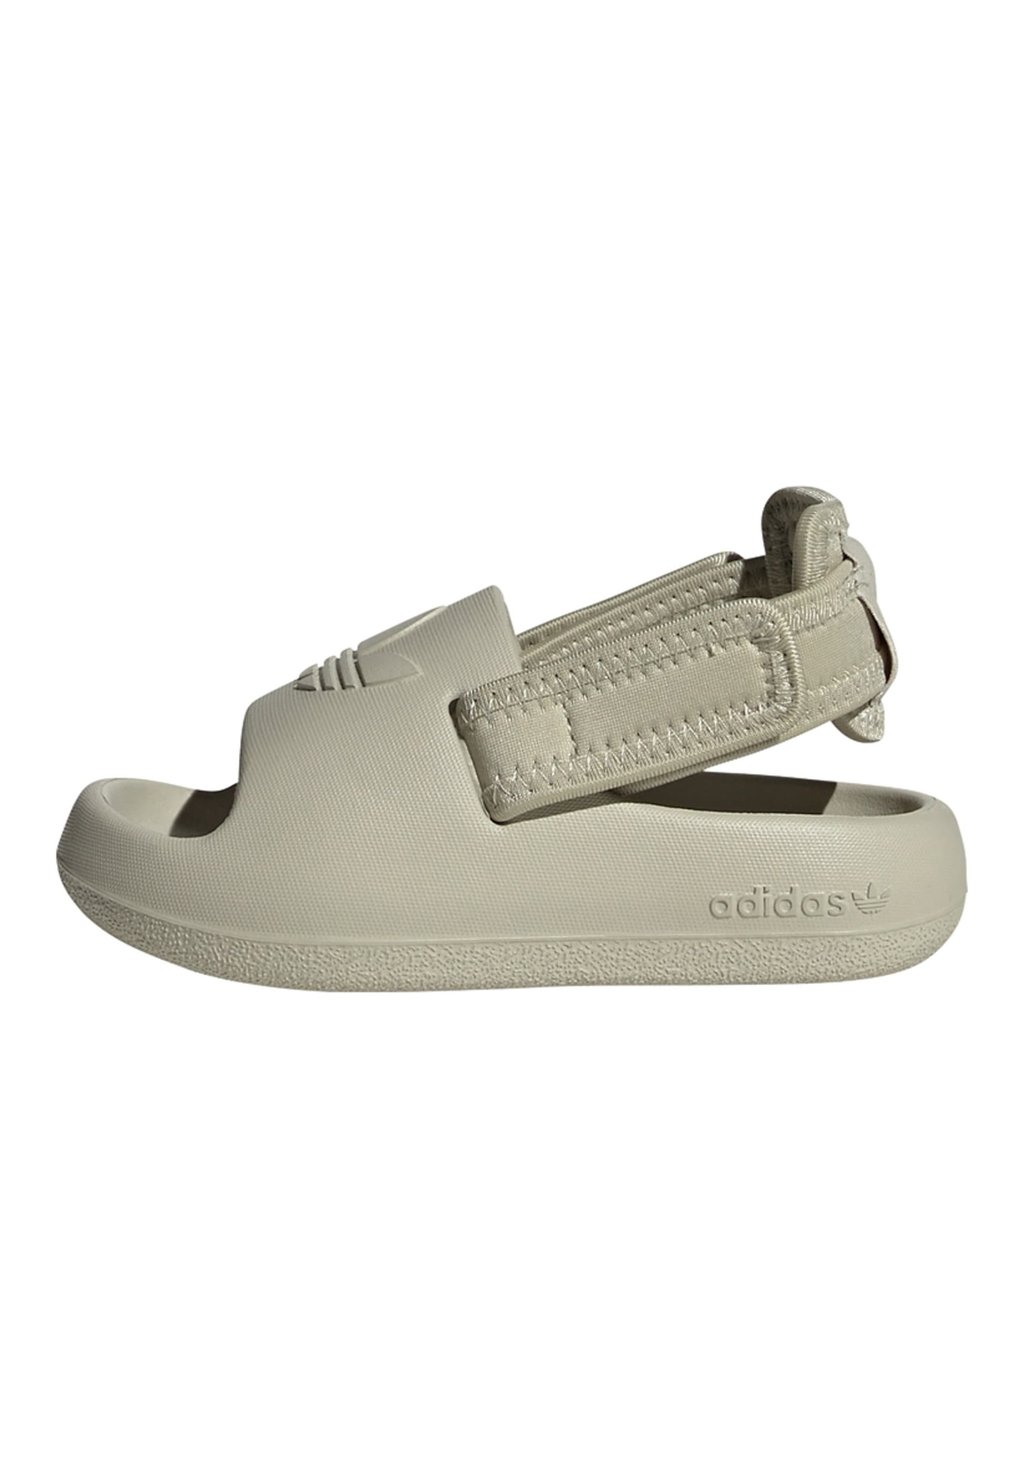 Трекинговые сандалии adidas Originals, цвет putty grey putty grey putty grey трекинговые сандалии gumbies цвет grey